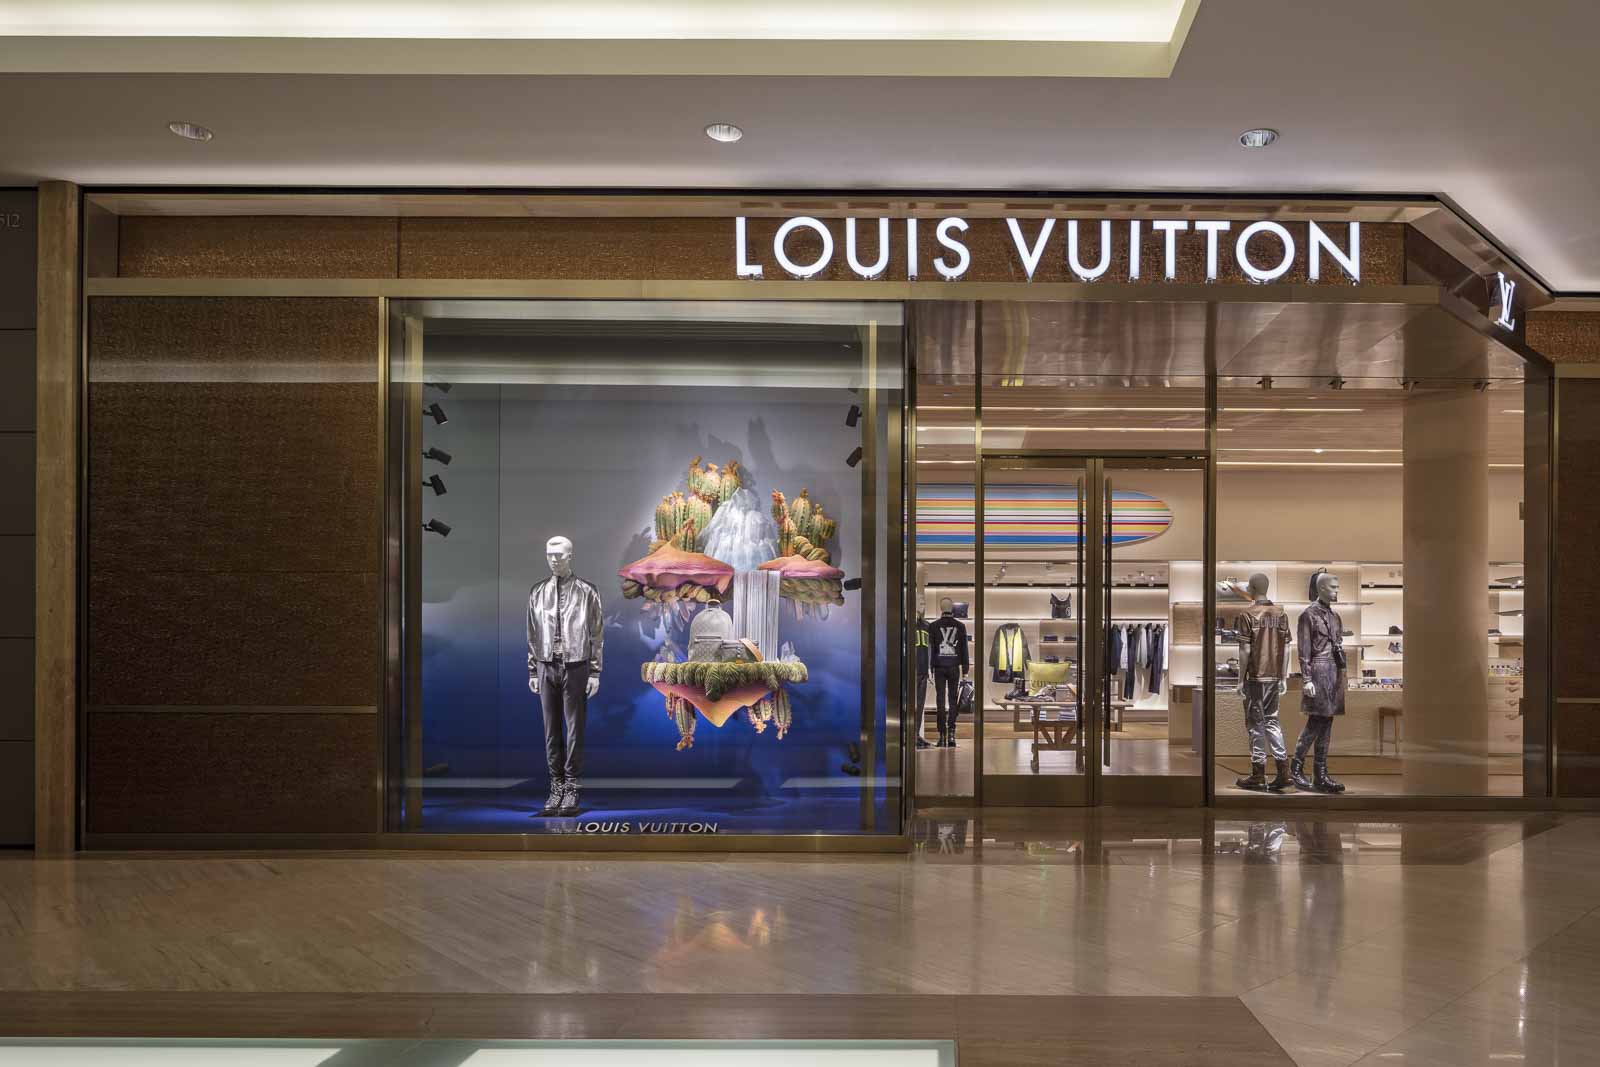 Louis Vuitton, South coast plaza, Costa Mesa, California